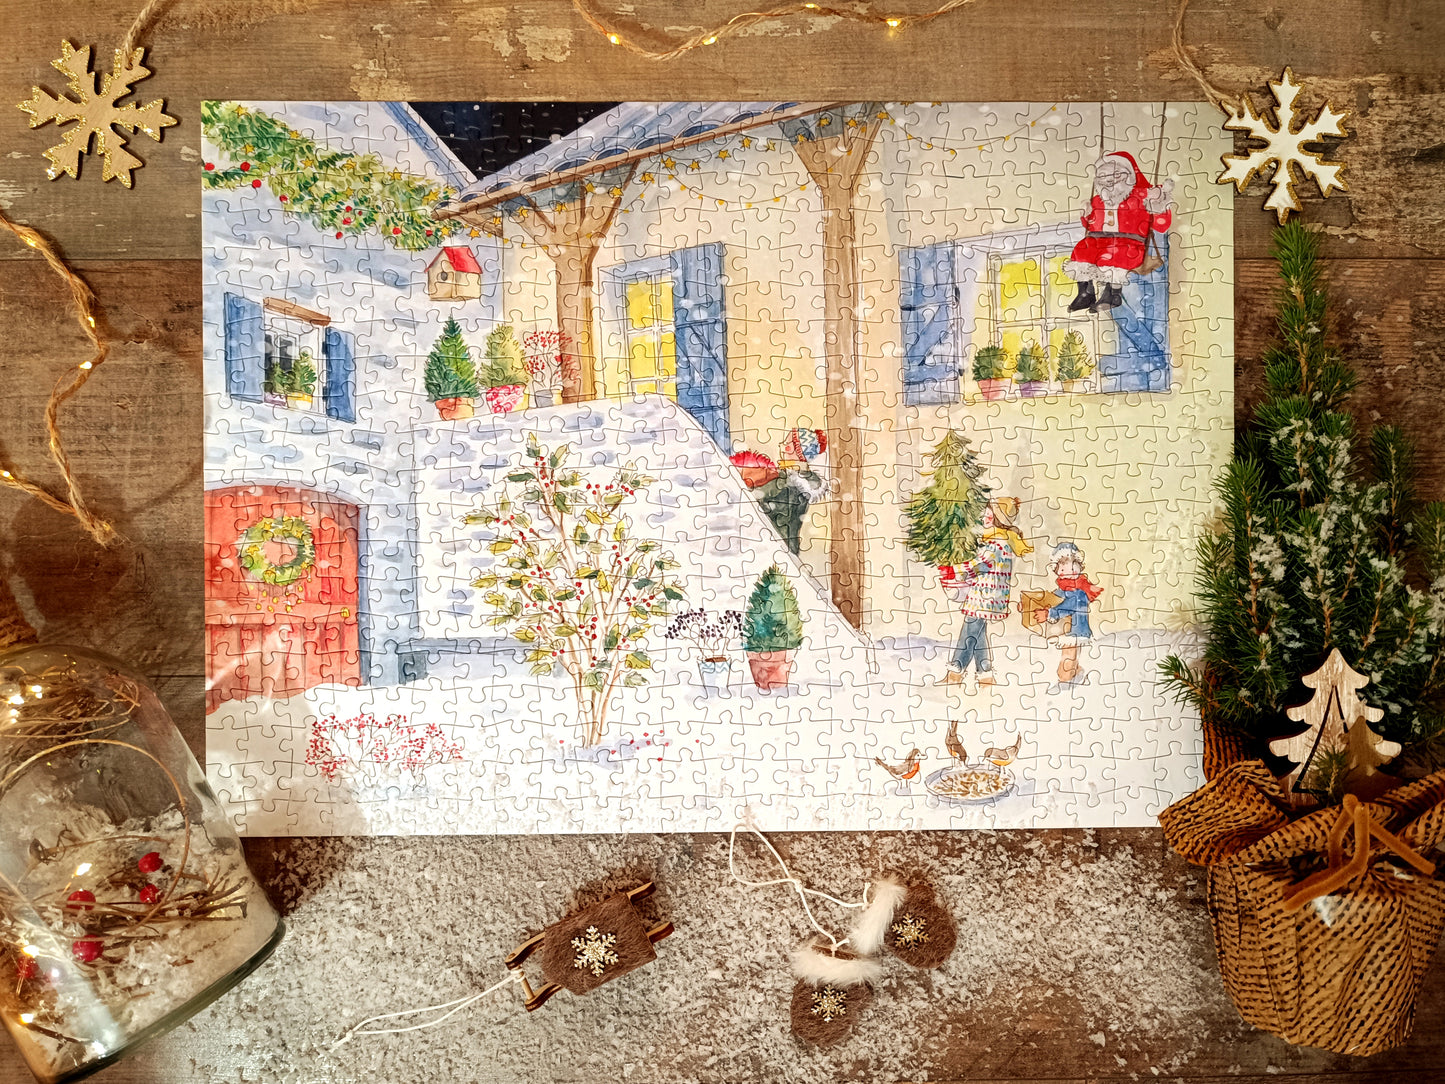 Puzzle n°25 "Maison de campagne" 500 pieces by Delphine Balme